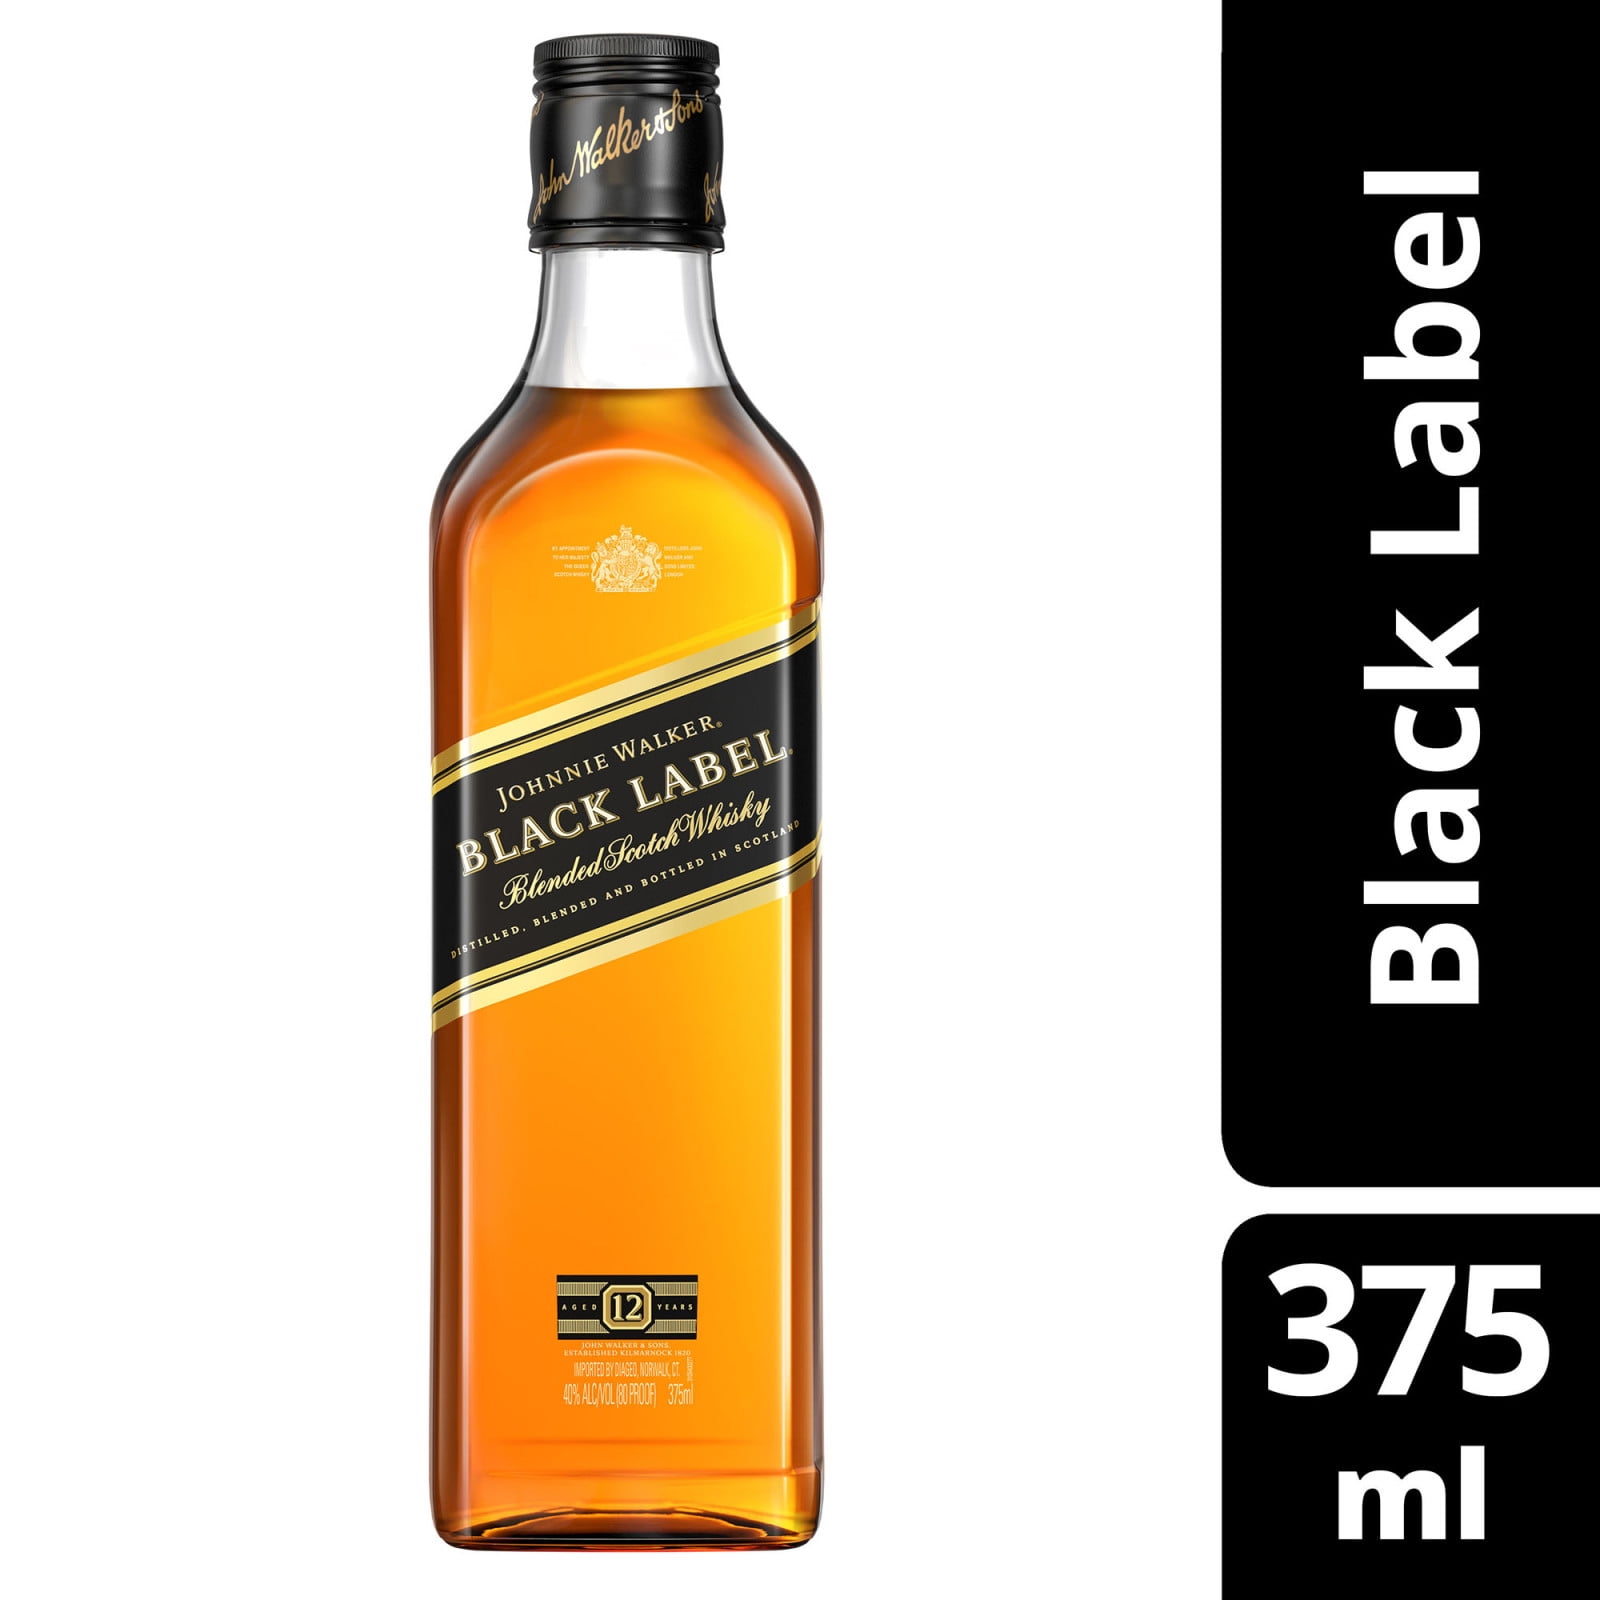 Walker Scotch 375 Johnnie ml, Blended 40% Label Black Whisky, ABV